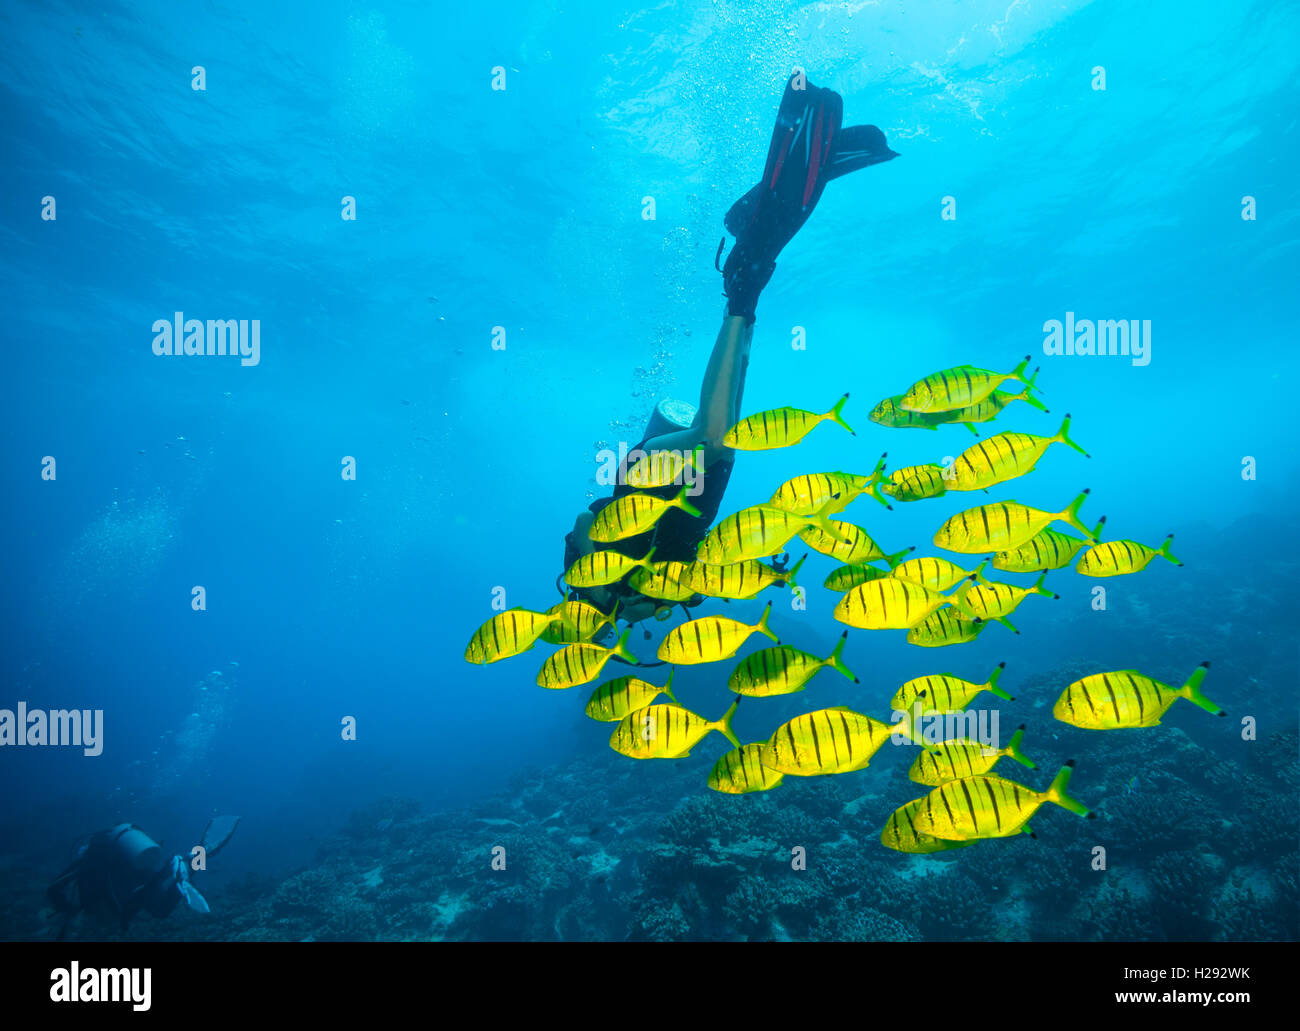 Troupeau de poissons jaunes qui coule dans l'océan Indien Banque D'Images